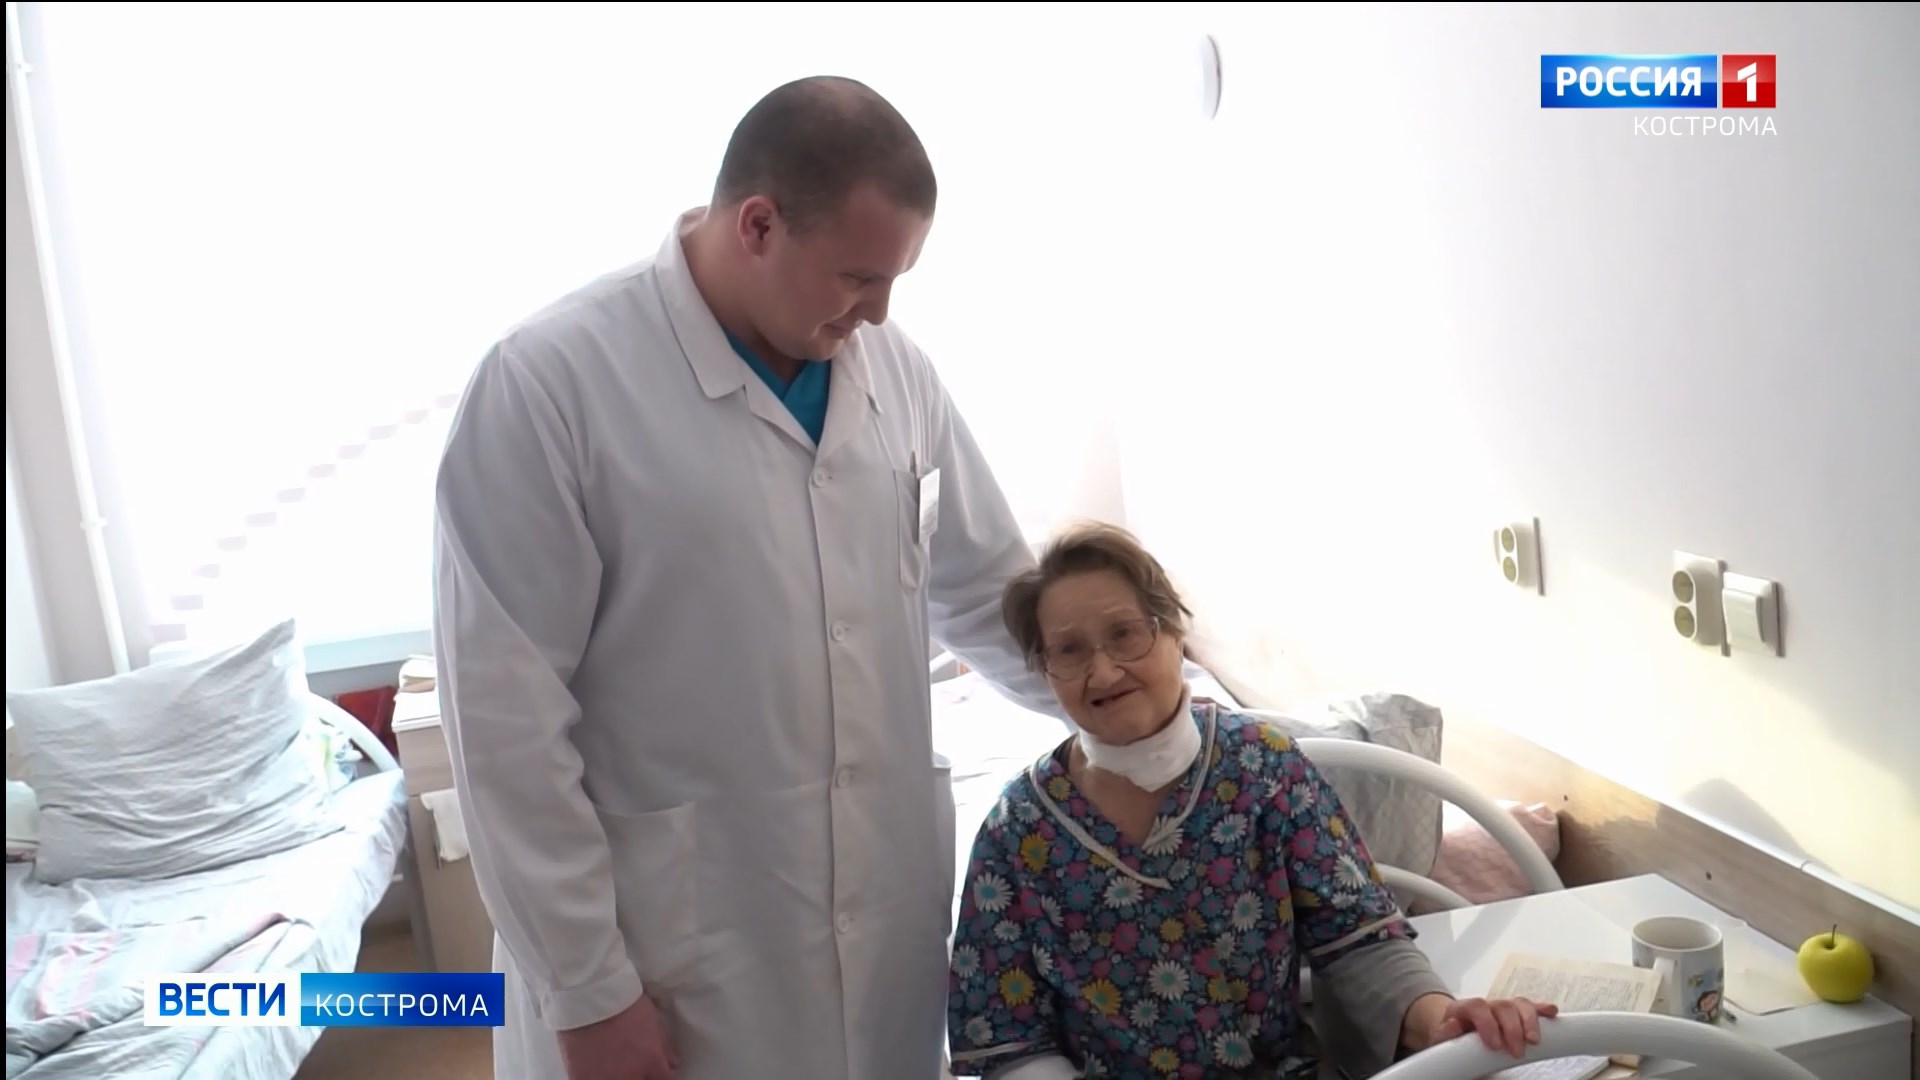 Сосудистый хирург из Костромы претендует на звание лучшего врача страны